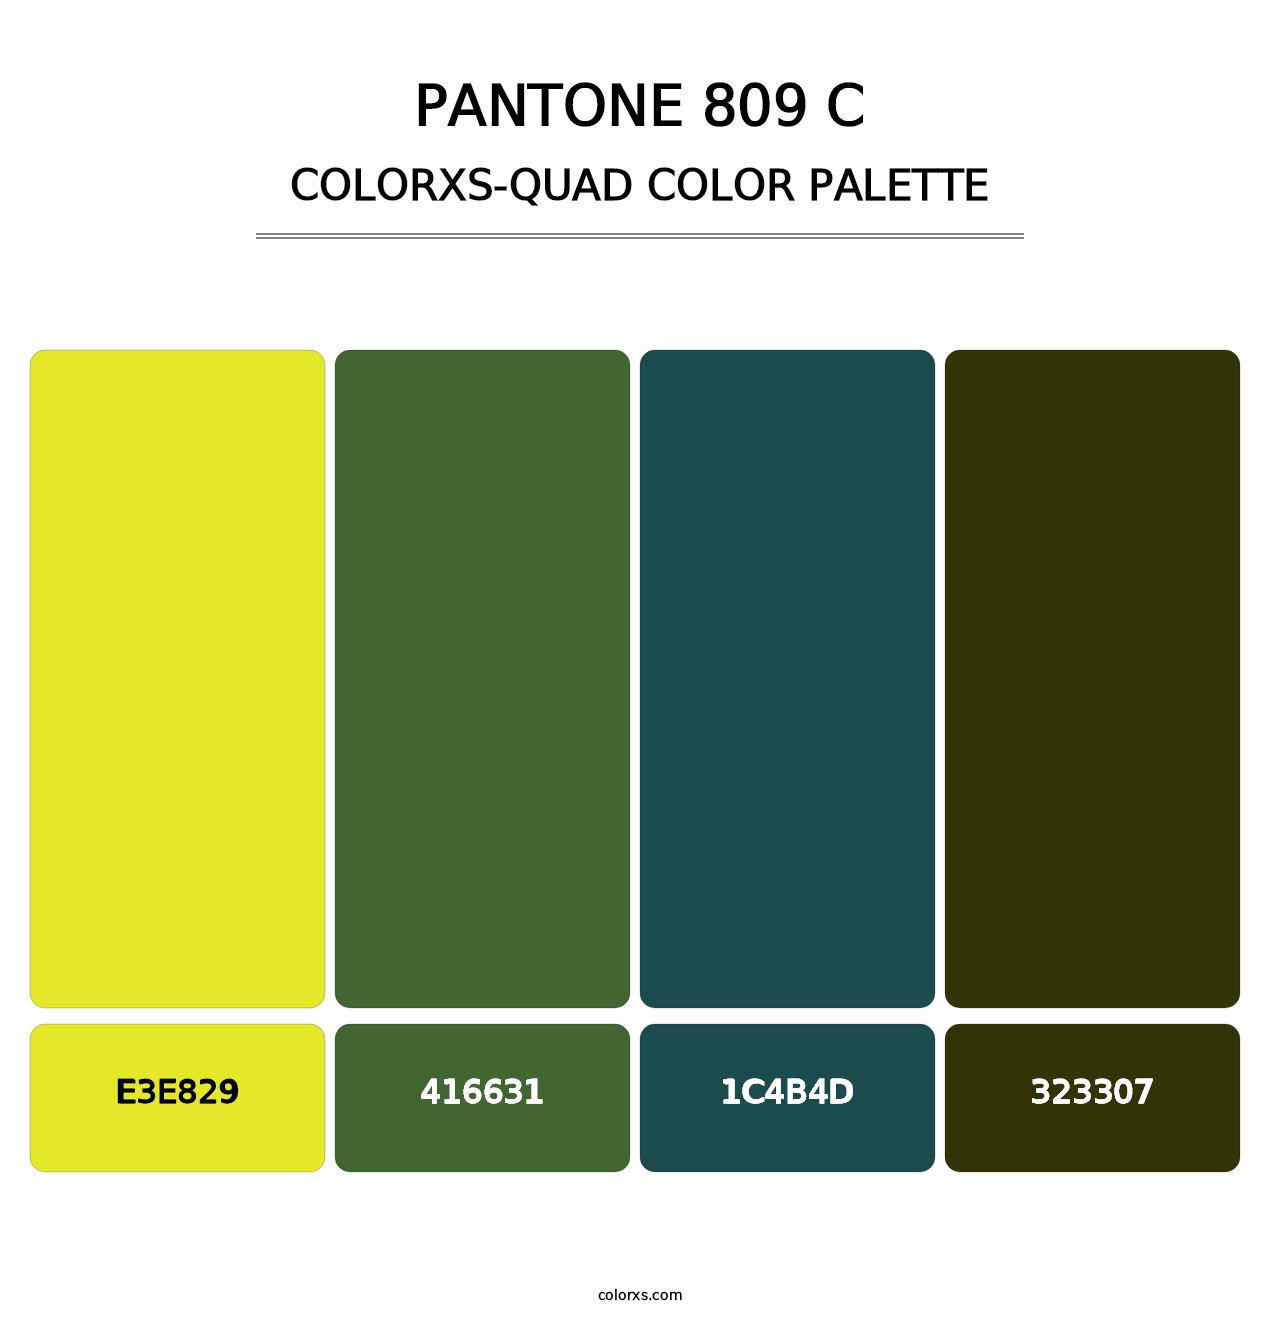 PANTONE 809 C - Colorxs Quad Palette